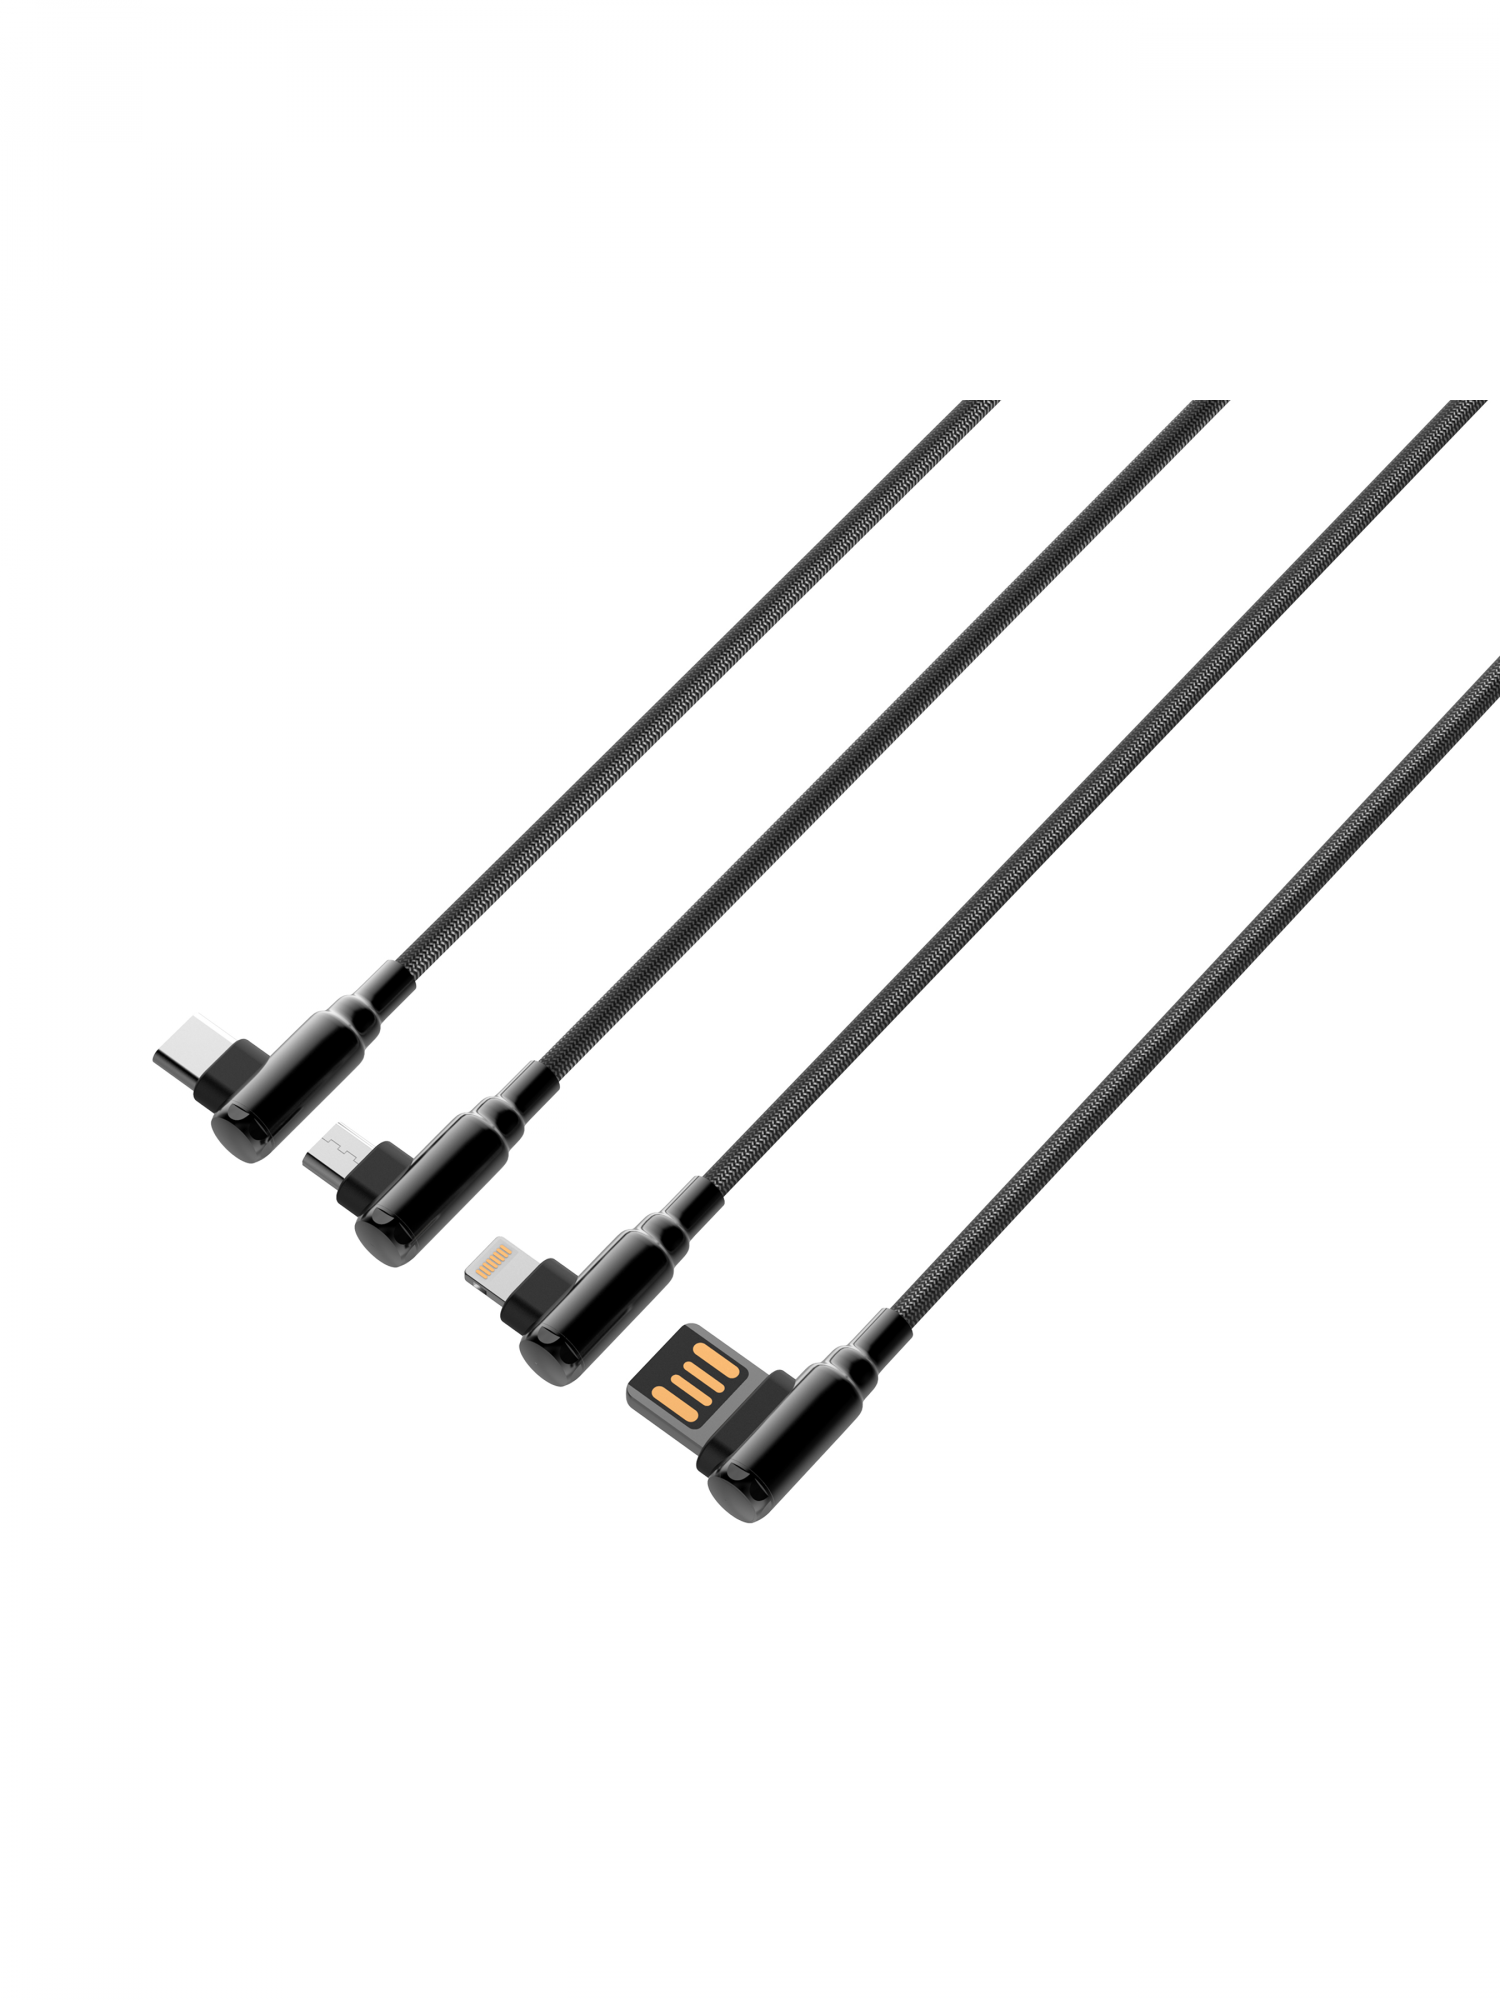 Кабель LDNIO LS422/ USB кабель Type-C/ 2m Gray